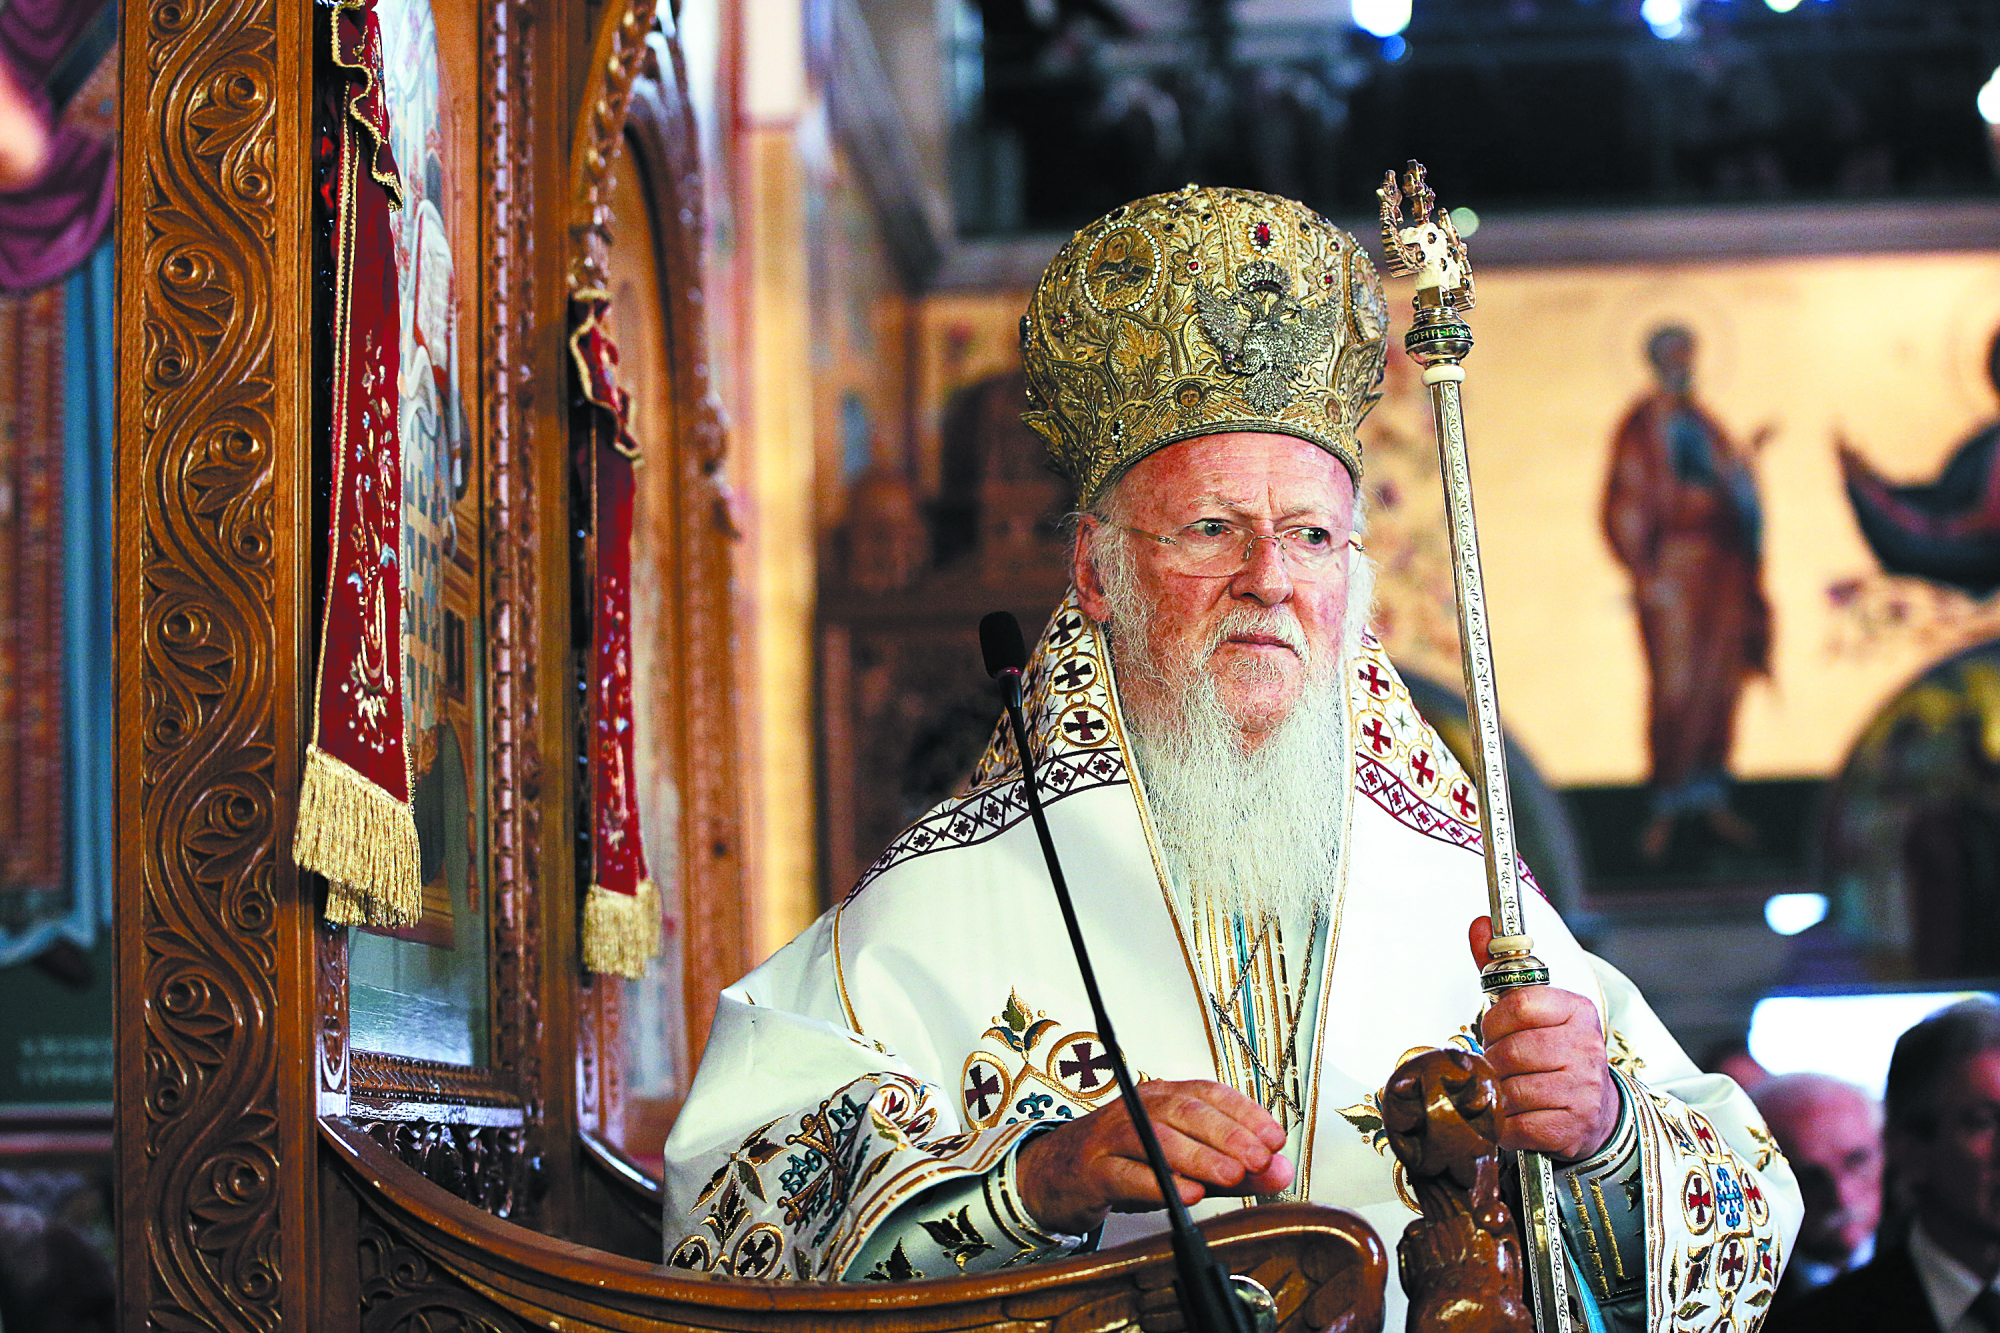 Πατριάρχης Βαρθολομαίος για την Παναγία Σουμελά: «Μόνο για λίγες ώρες η λειτουργία» - Αιχμές για τα εμπόδια στο Πατριαρχείο